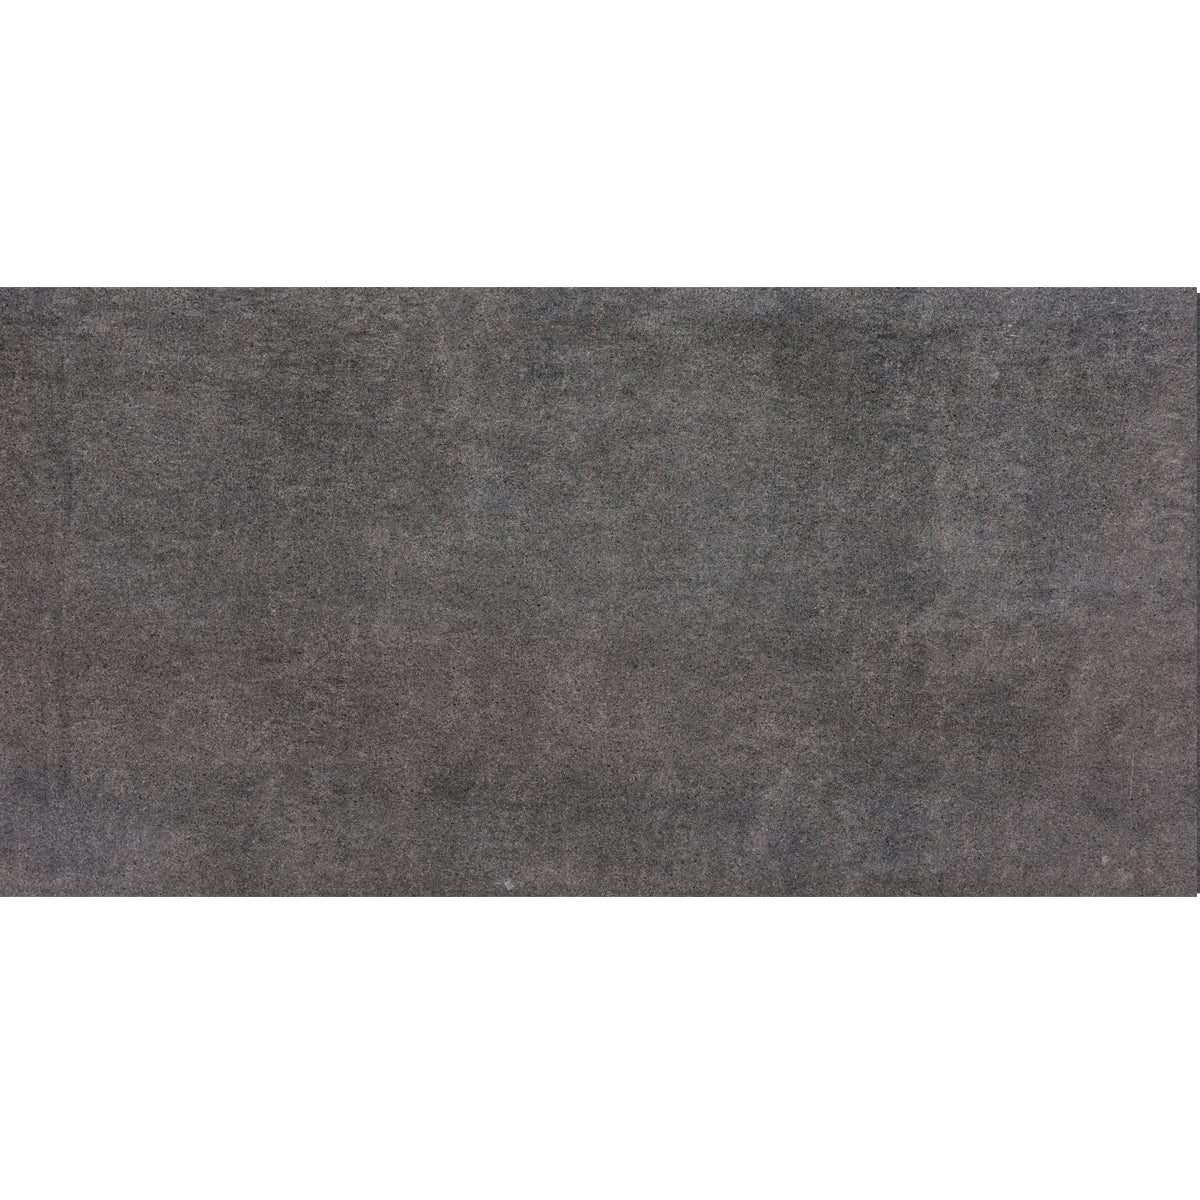 Alzatina grigio antracite effetto pietra L 246 cm x H 2.6 cm